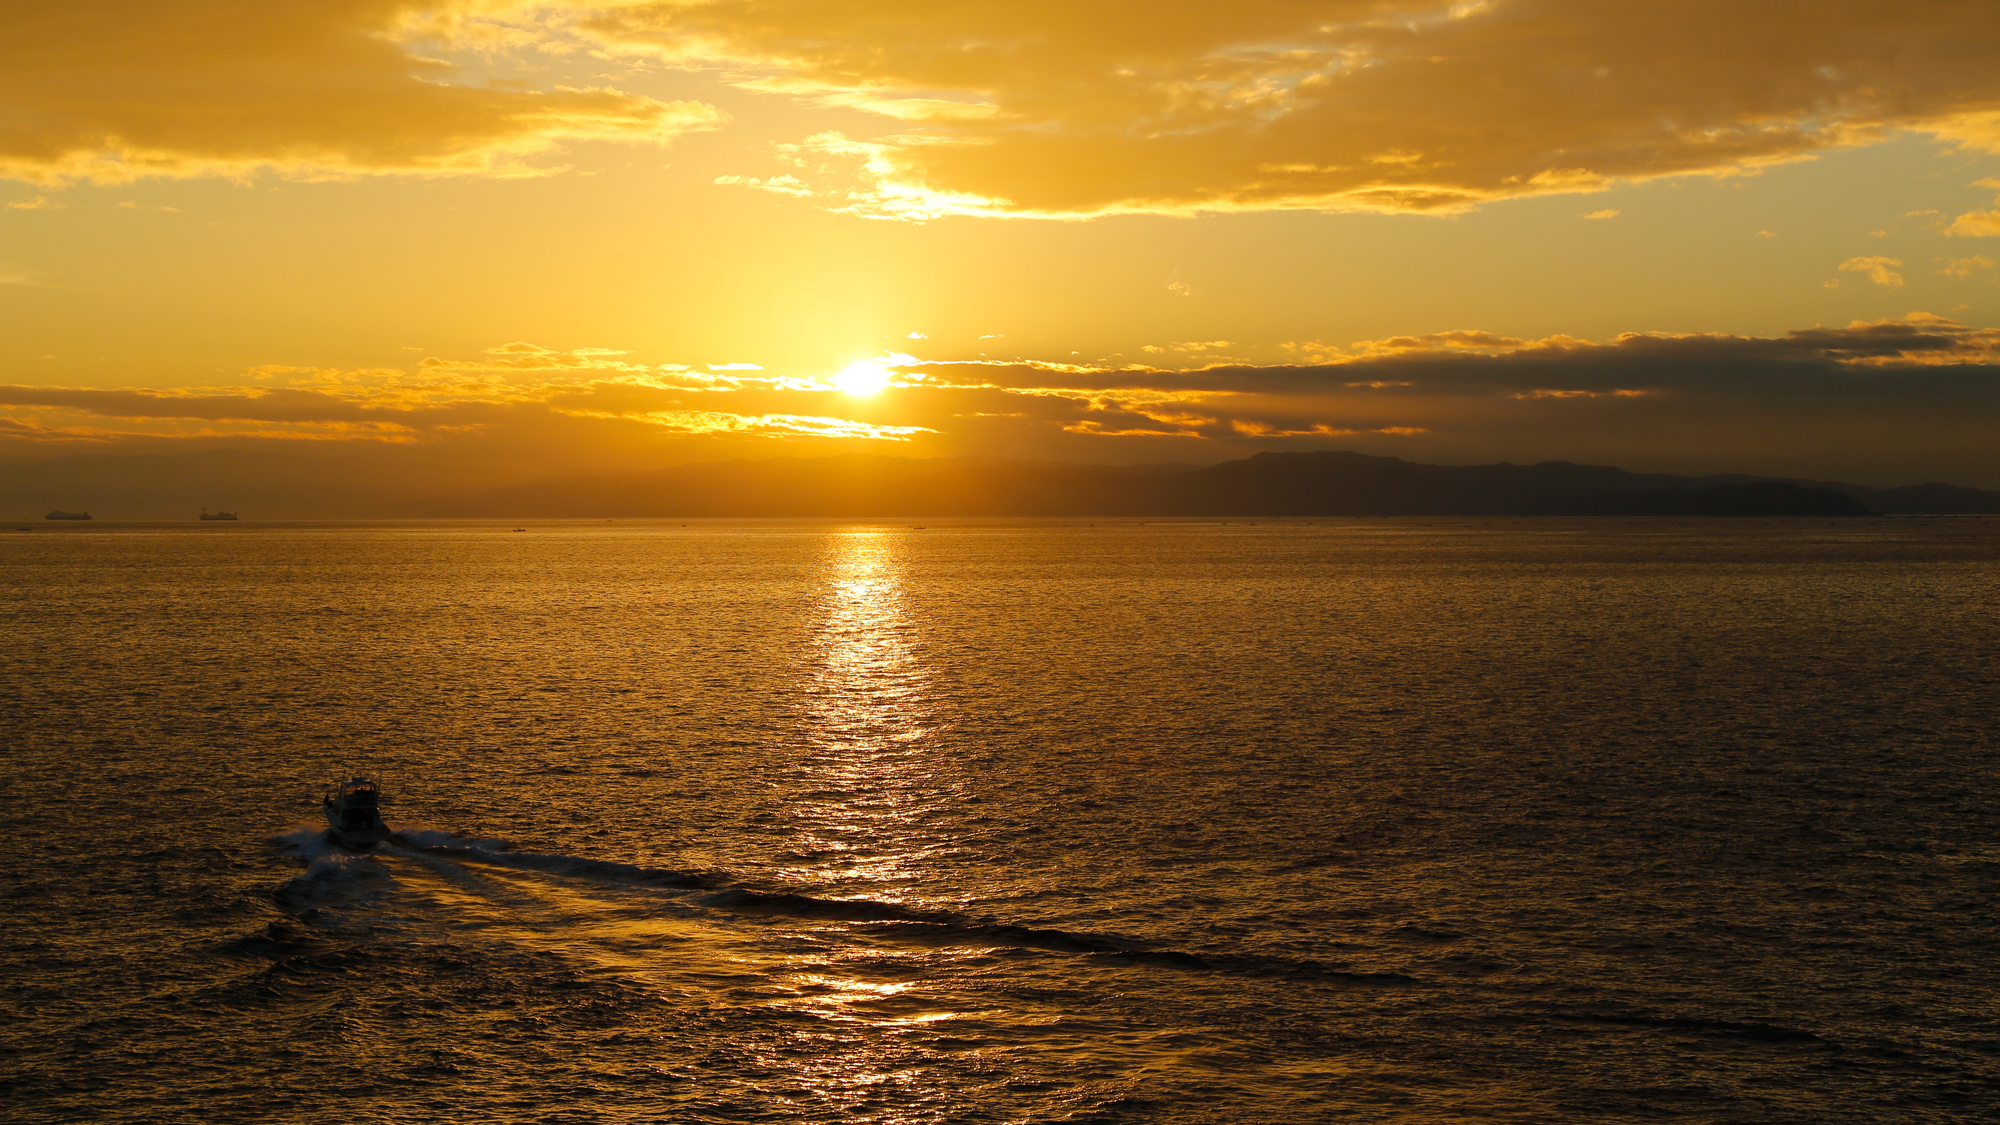 紀淡海峡から昇る美しい朝陽もご覧いただけます。